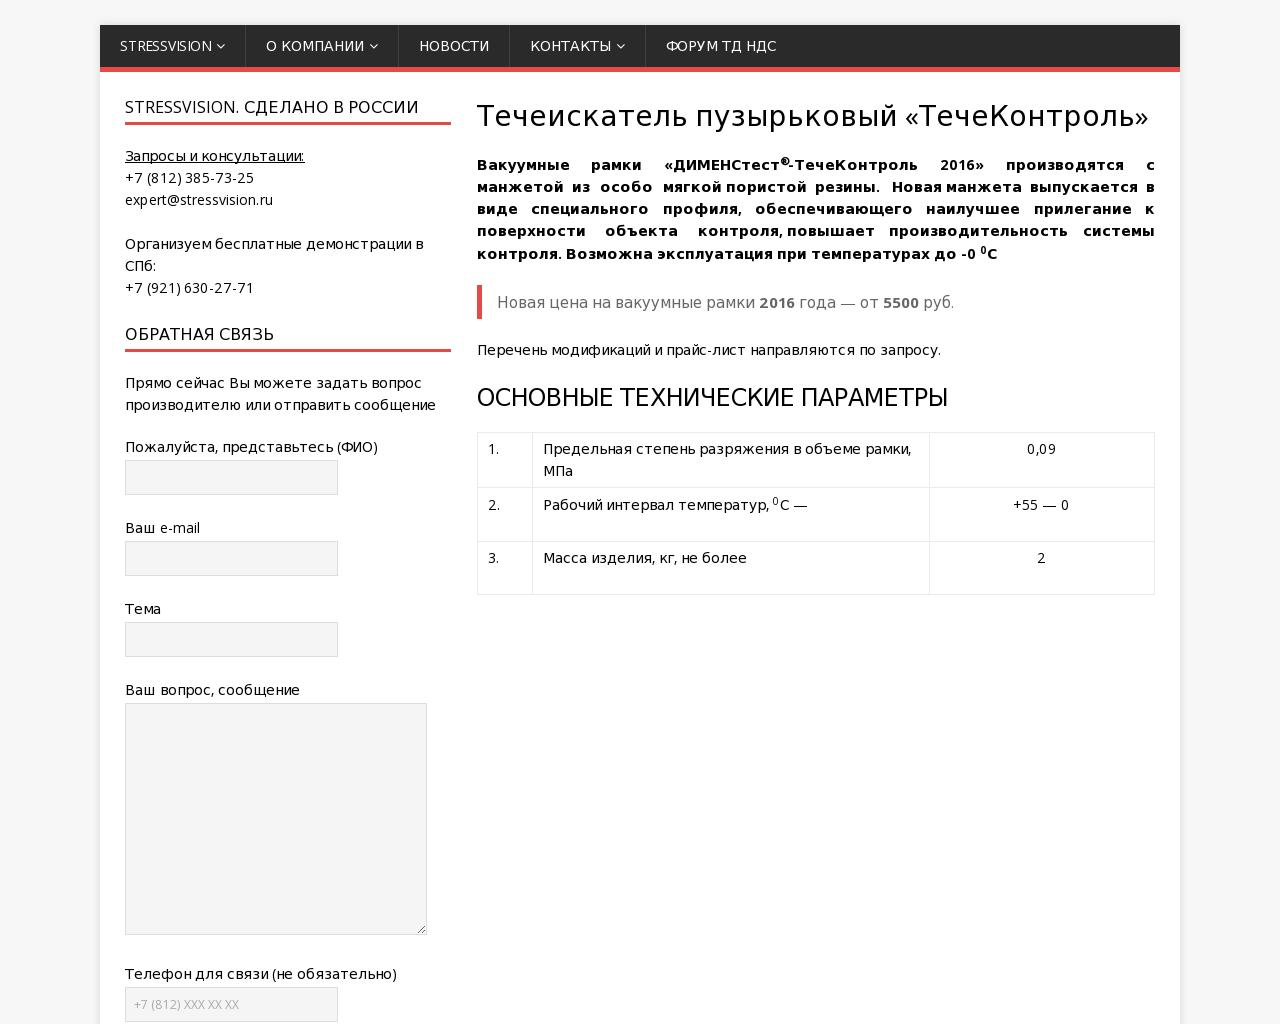 Изображение сайта techecontrol.ru в разрешении 1280x1024